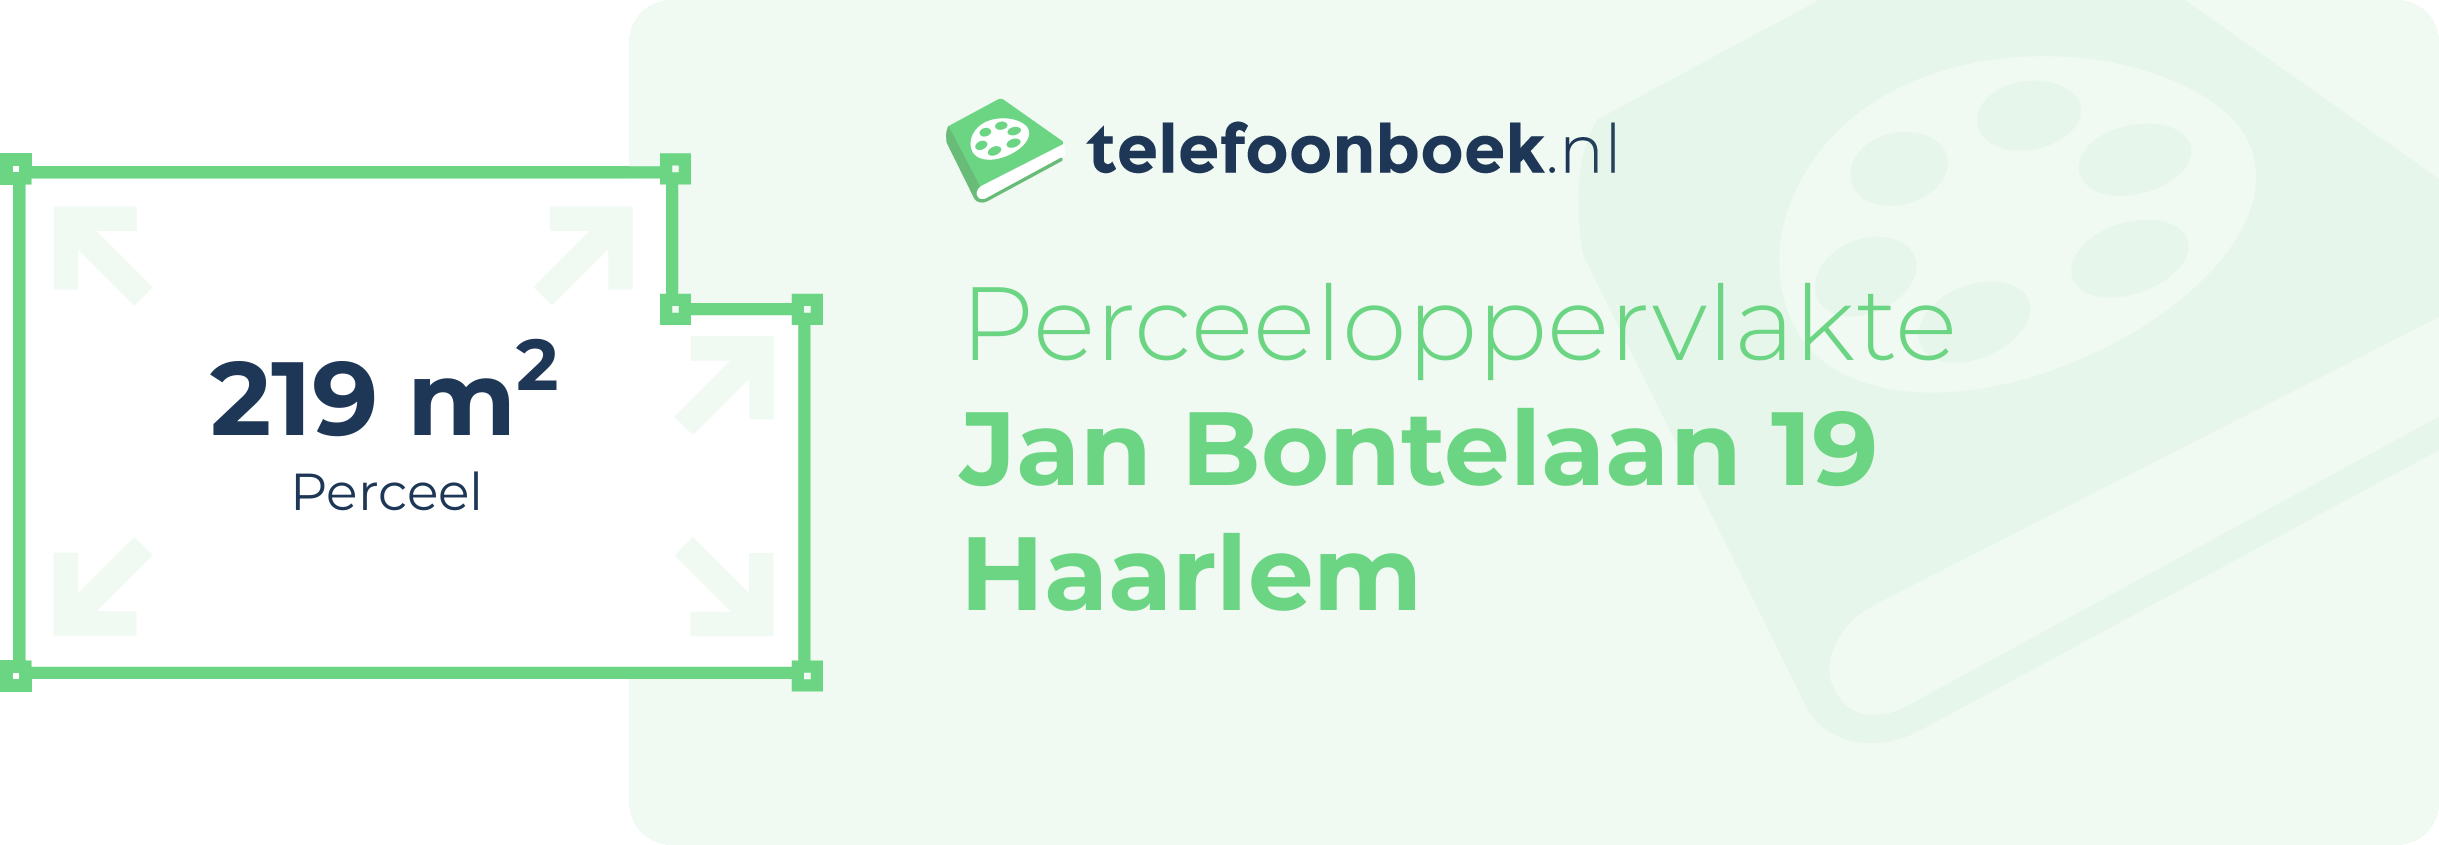 Perceeloppervlakte Jan Bontelaan 19 Haarlem